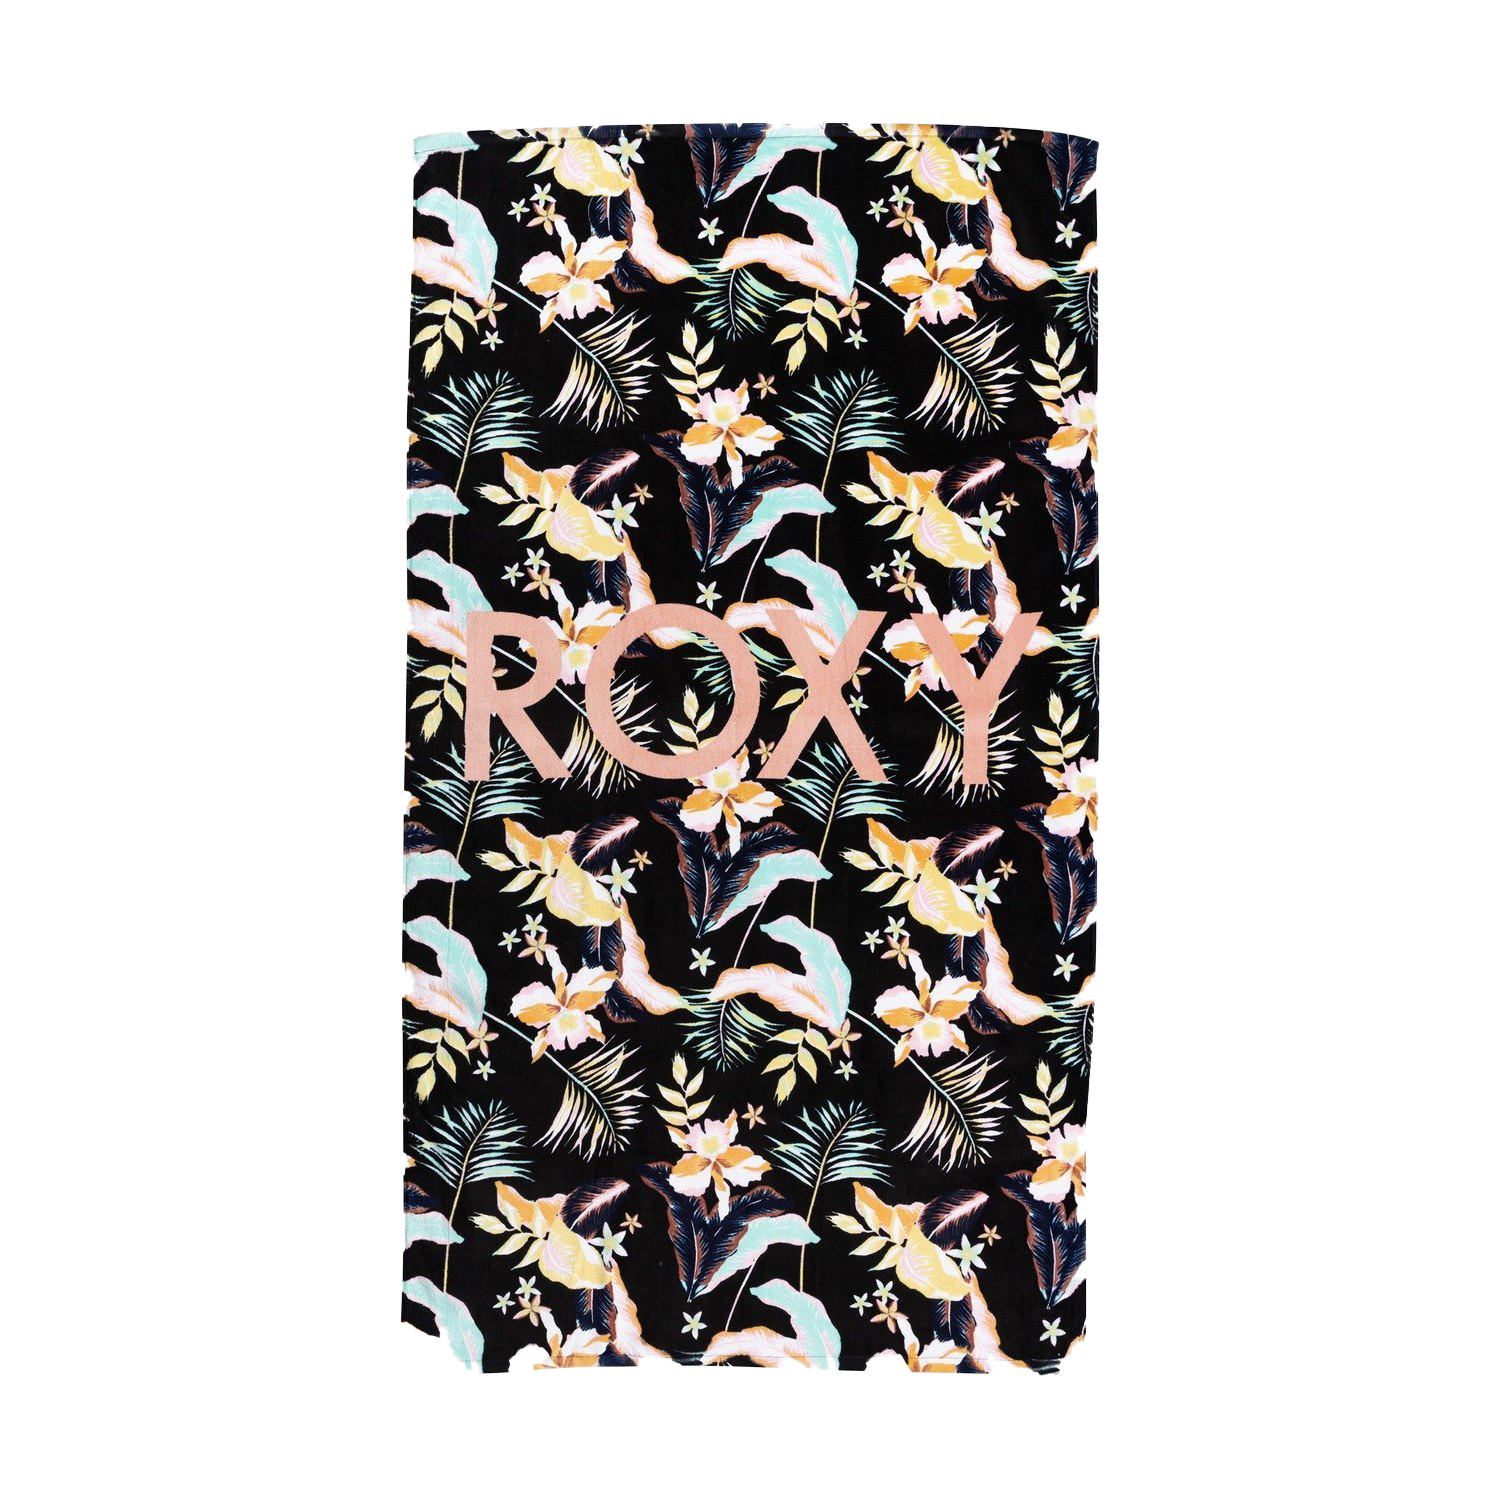 Roxy Sdeach Classics Mod Moldi Kadın Havlu